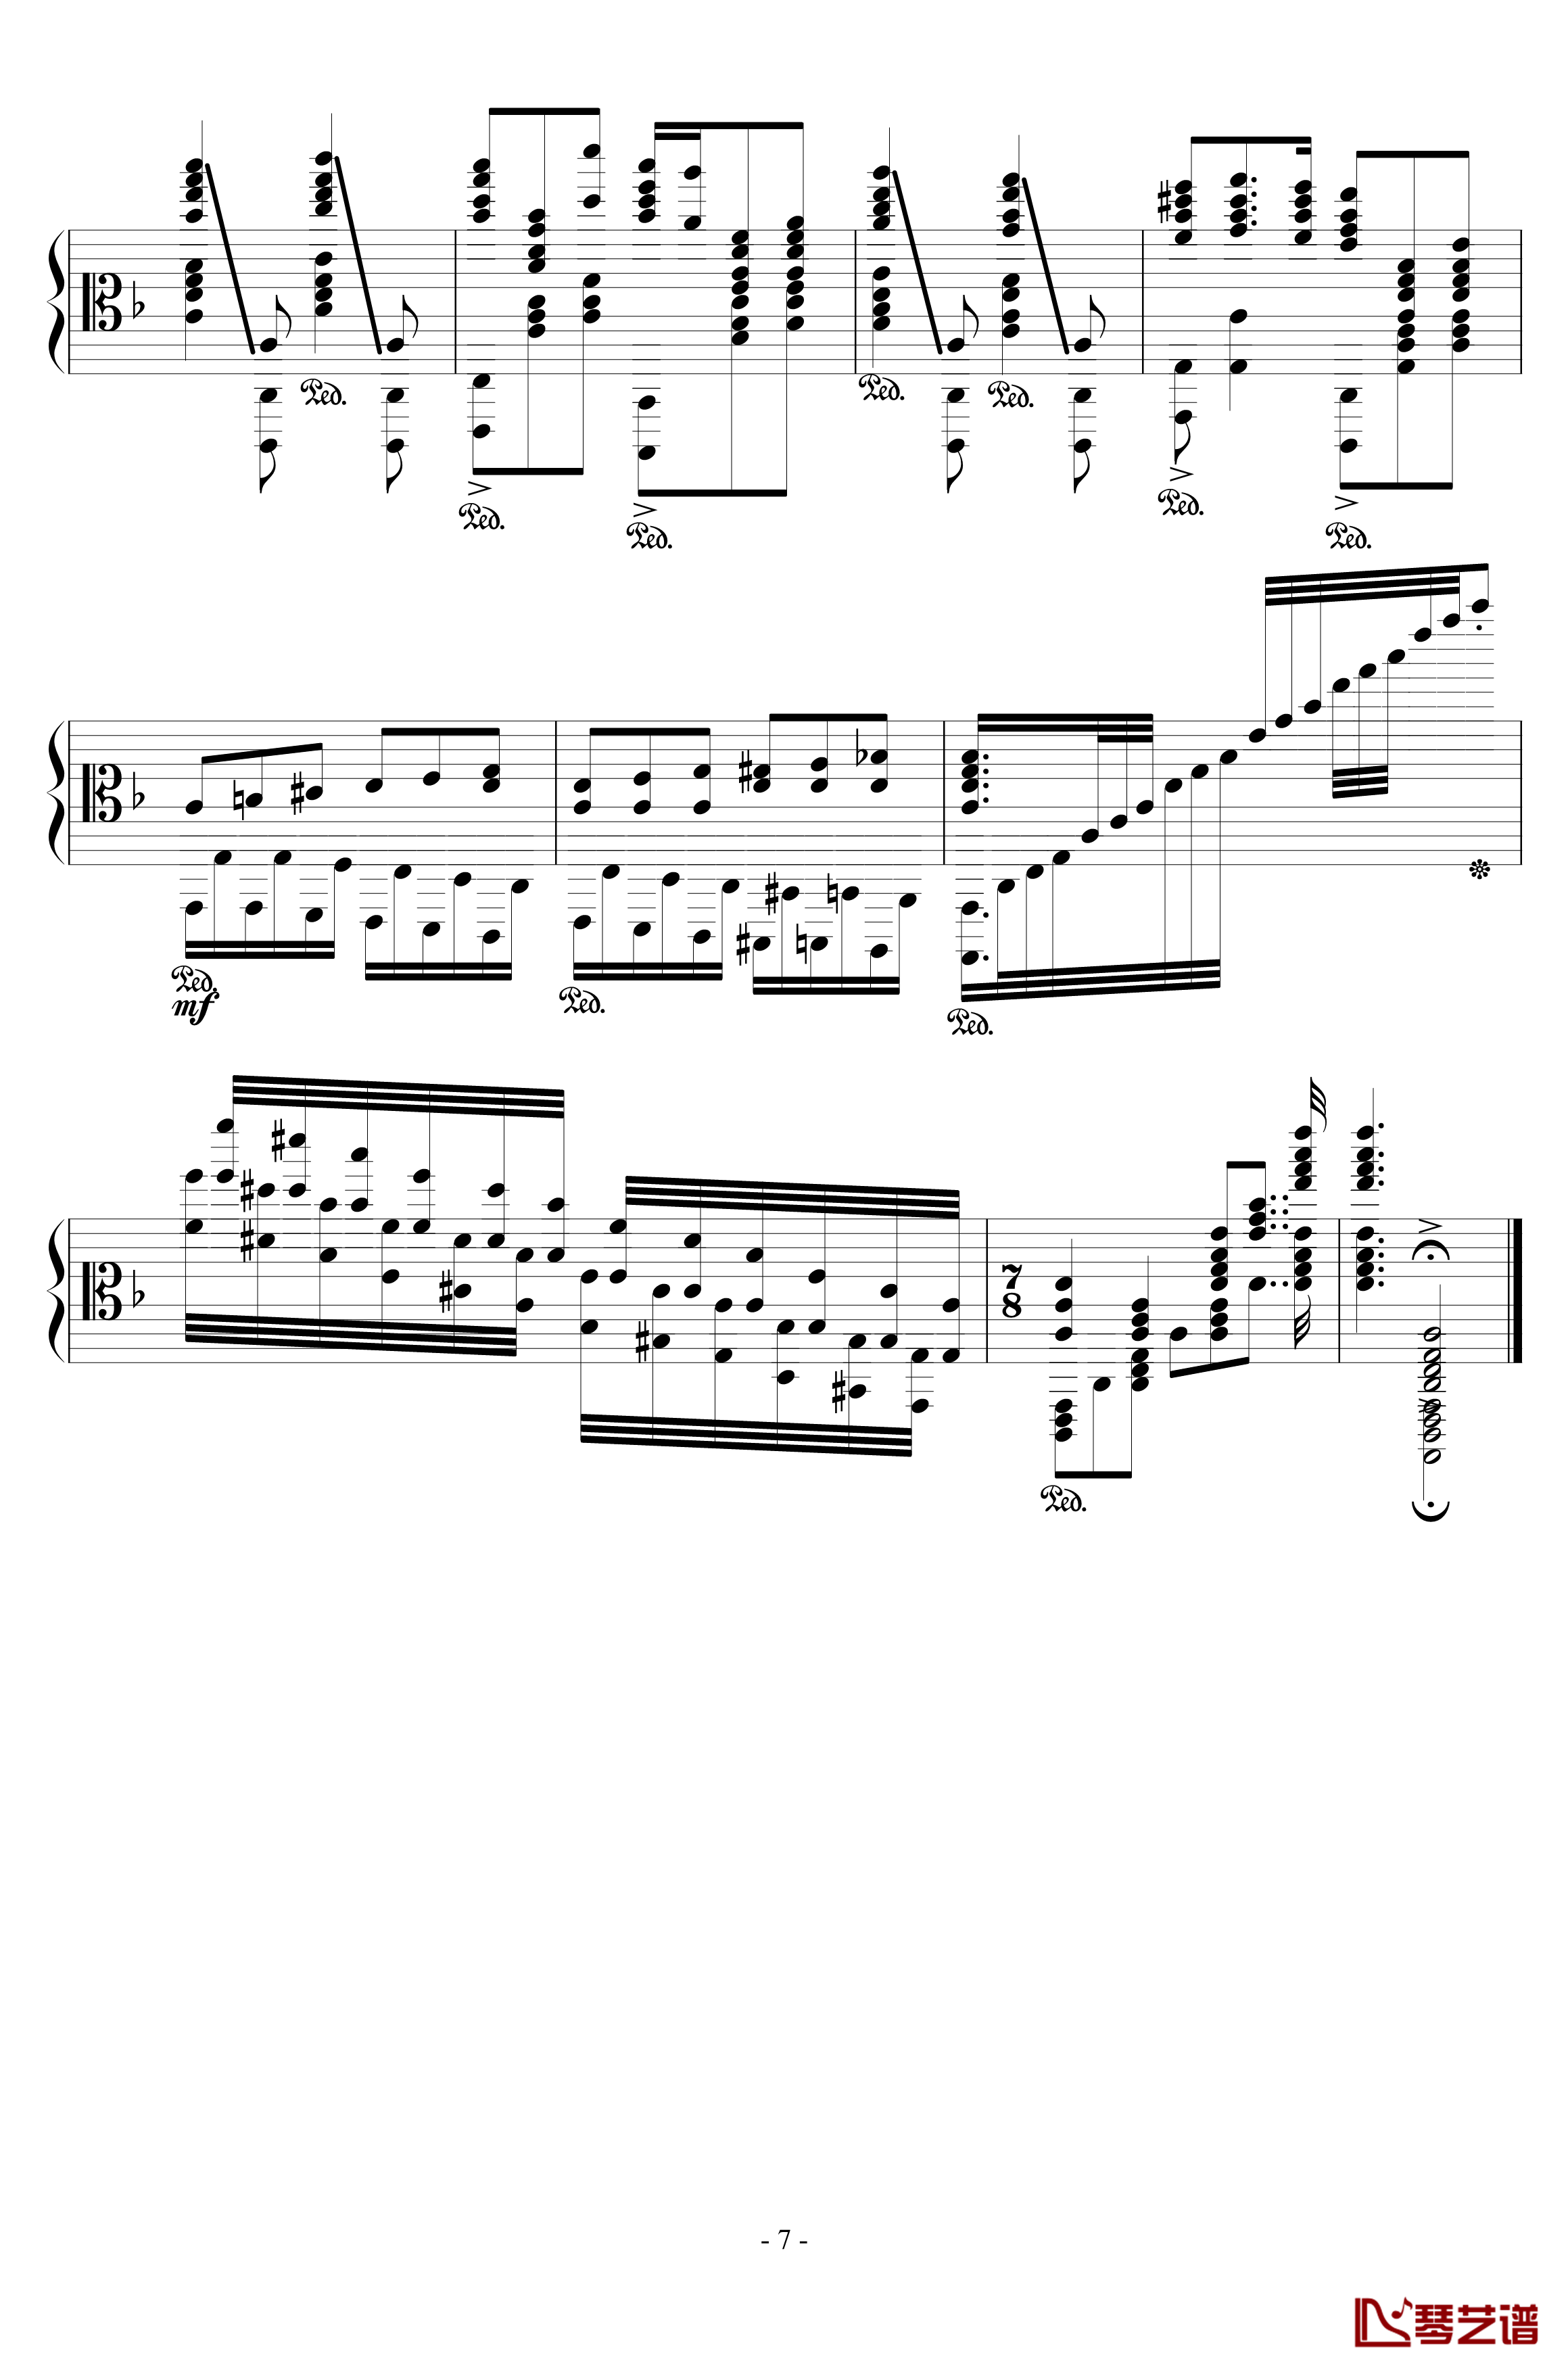 加勒比海盗钢琴谱-混合版-Hans Zimmer7